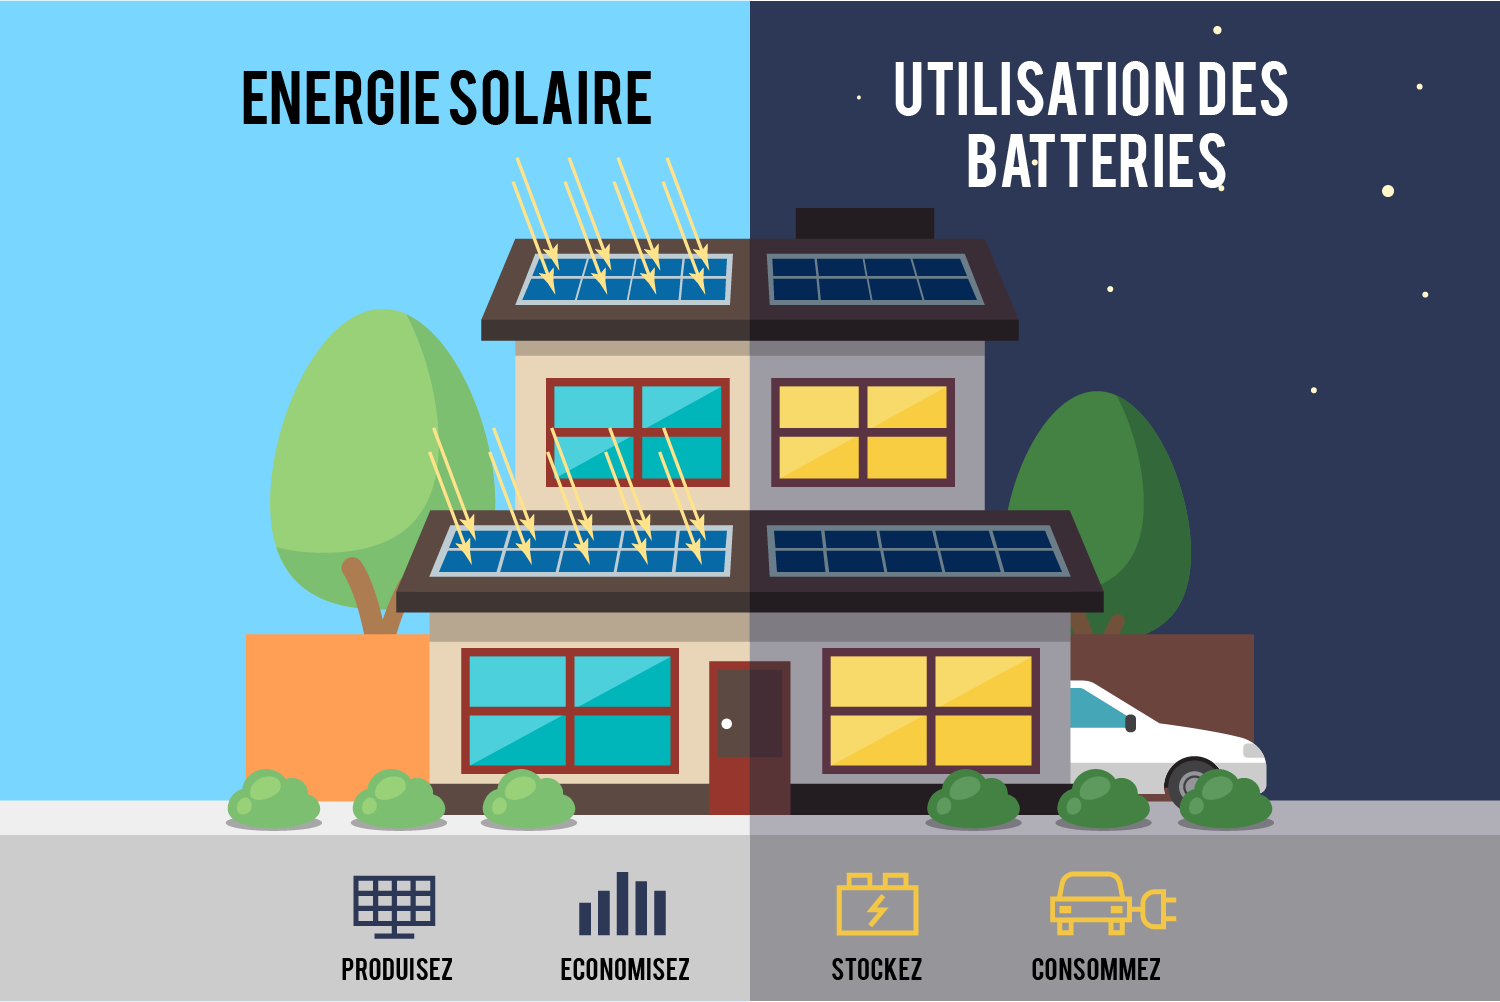 Schéma expliquant une maison autonome solaire avec batteries